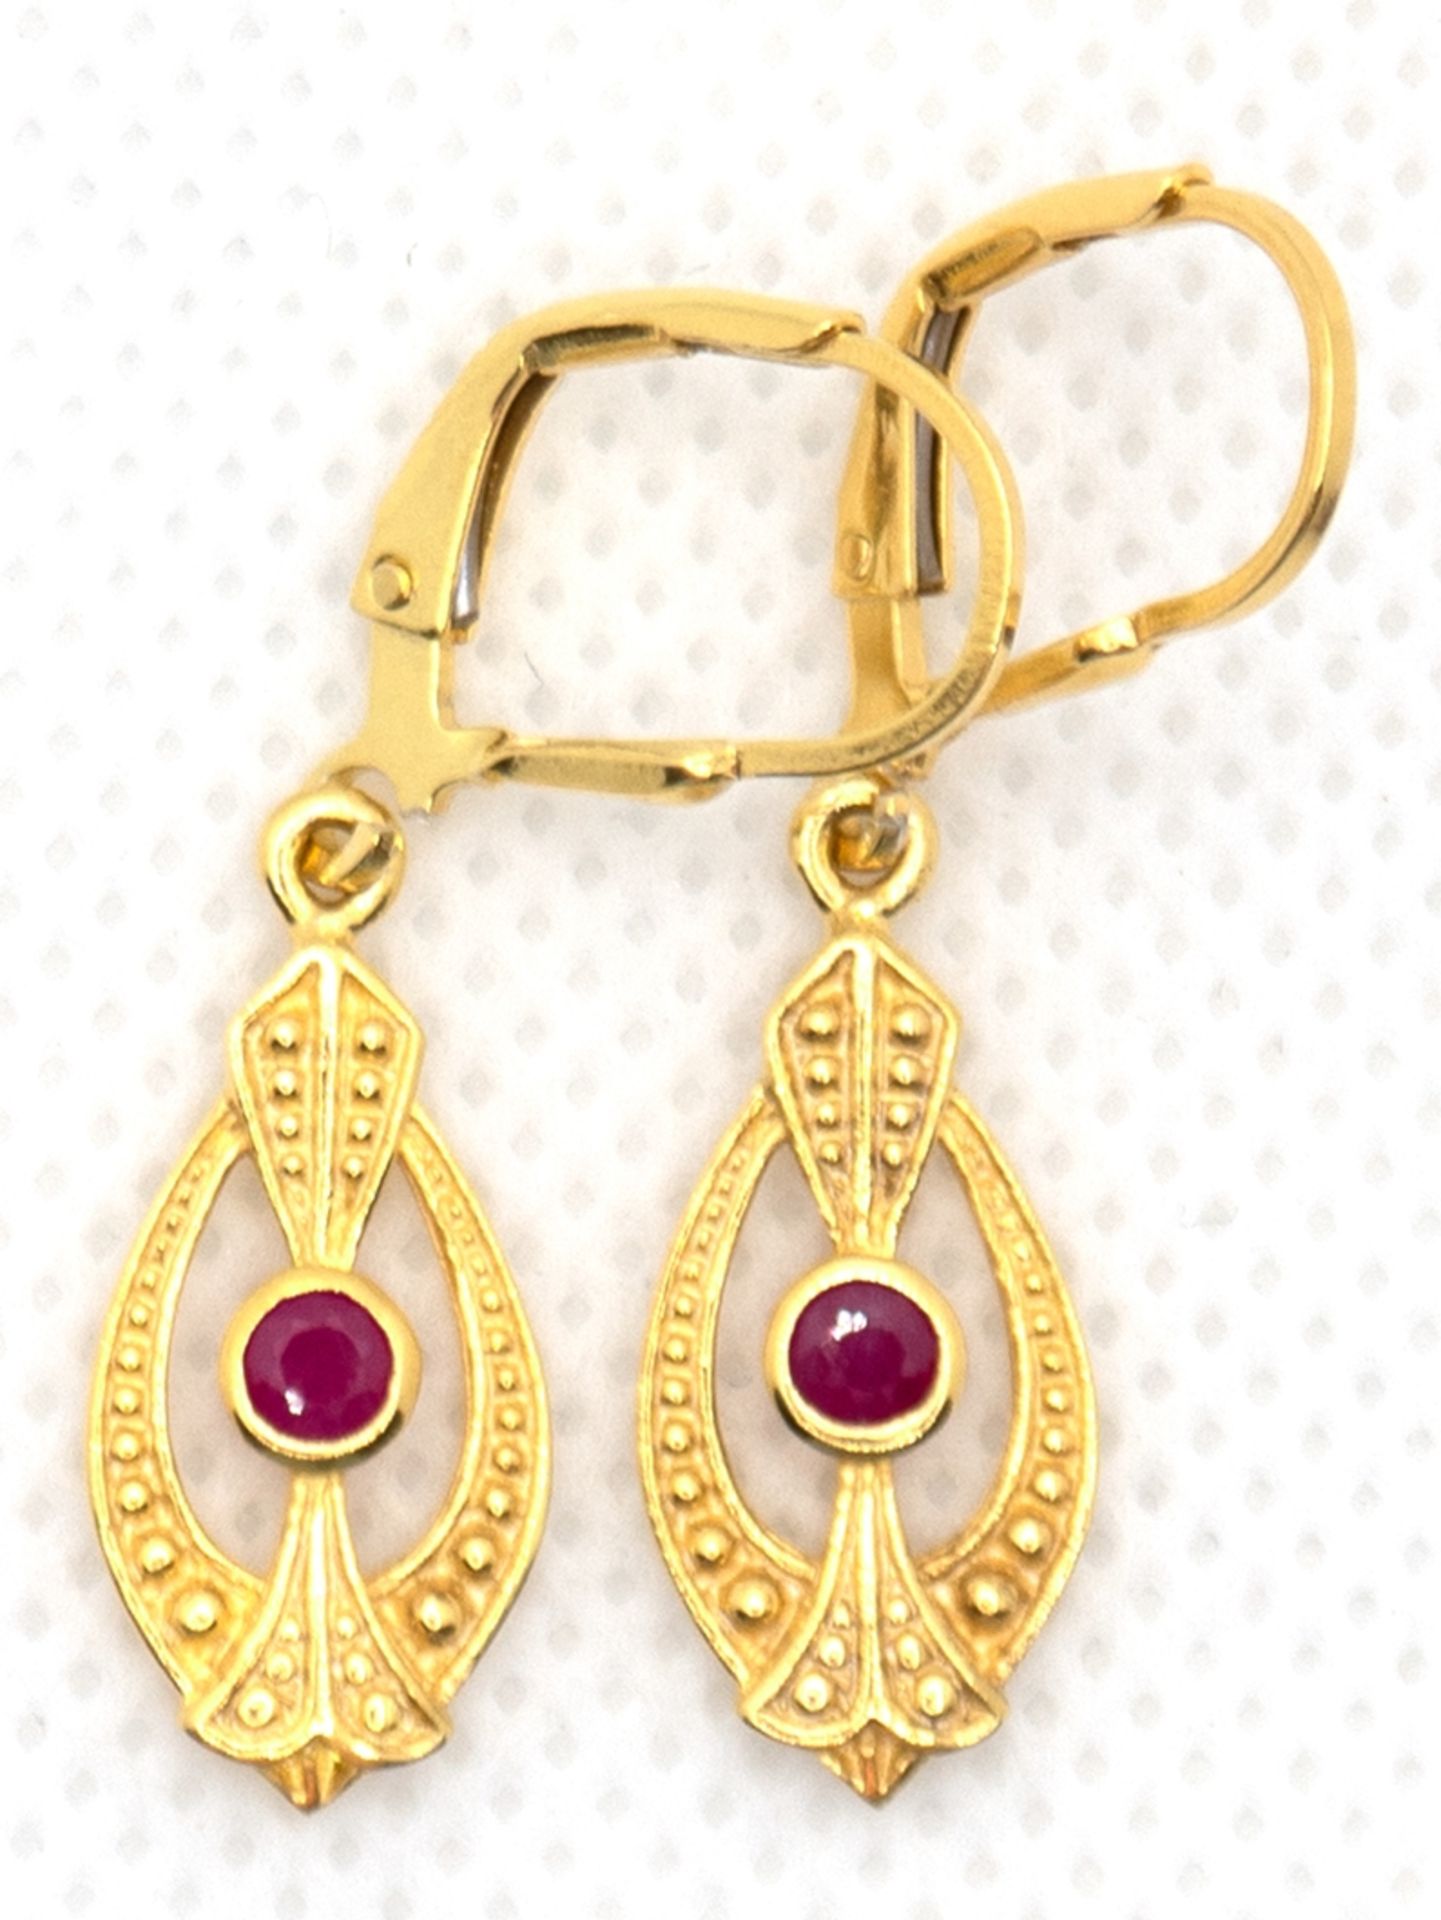 Ohrringe im Jugendstil, 925er Silber vergoldet, Rubine, Länge ca. 3,4 cm